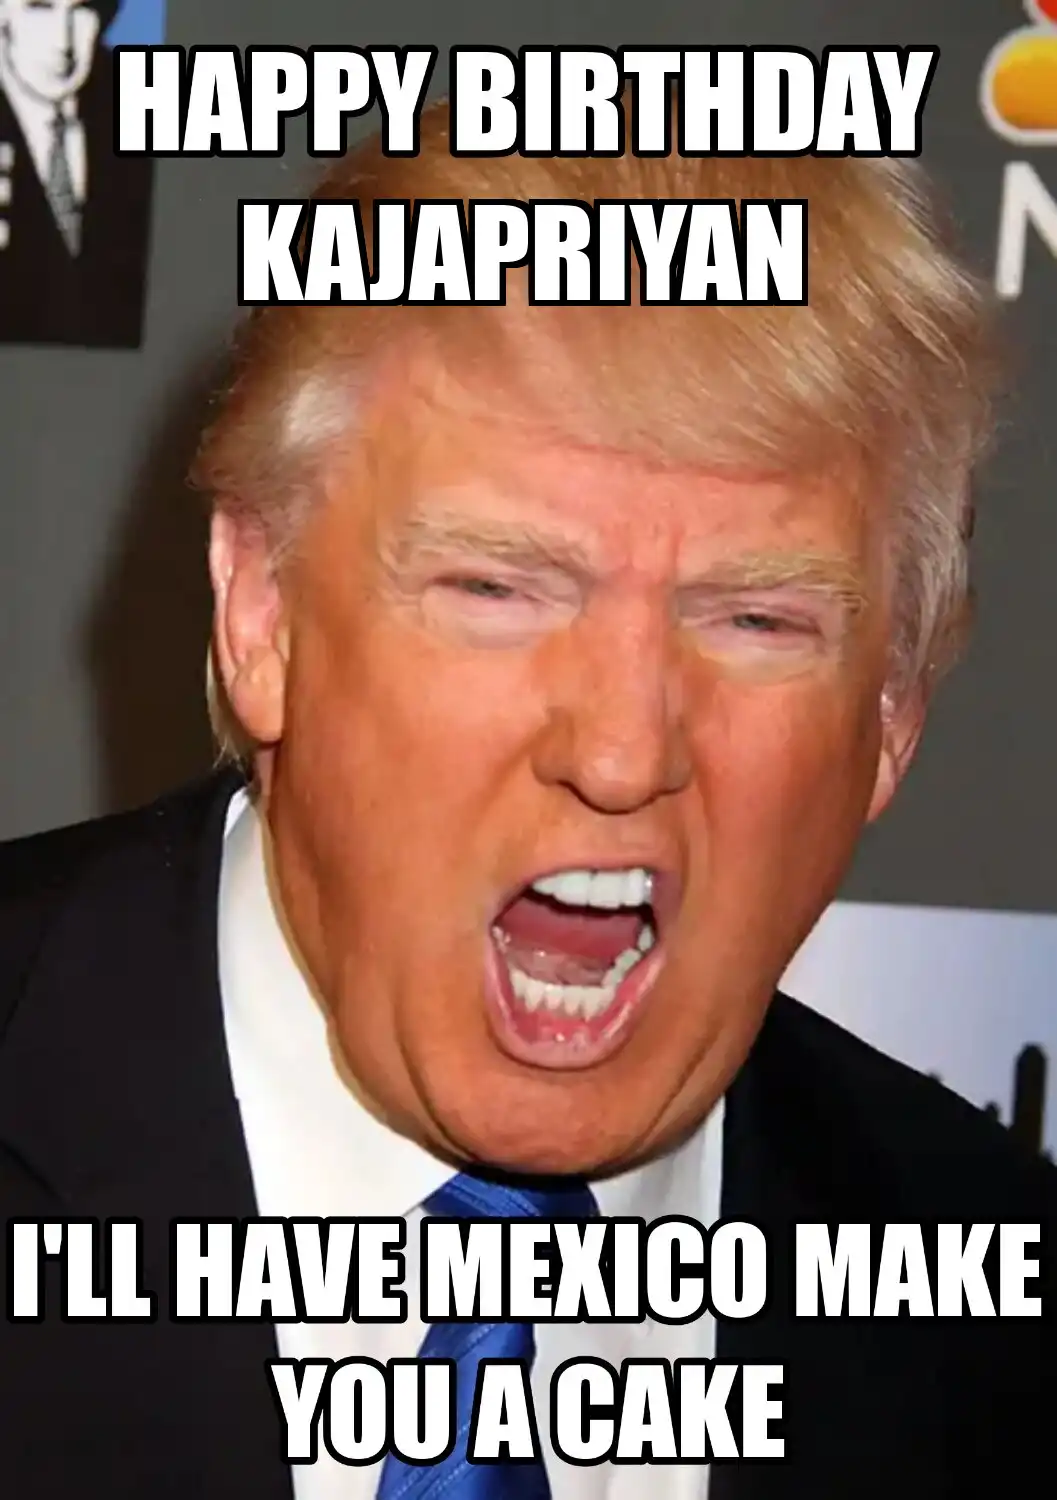 Happy Birthday Kajapriyan Mexico Make You A Cake Meme